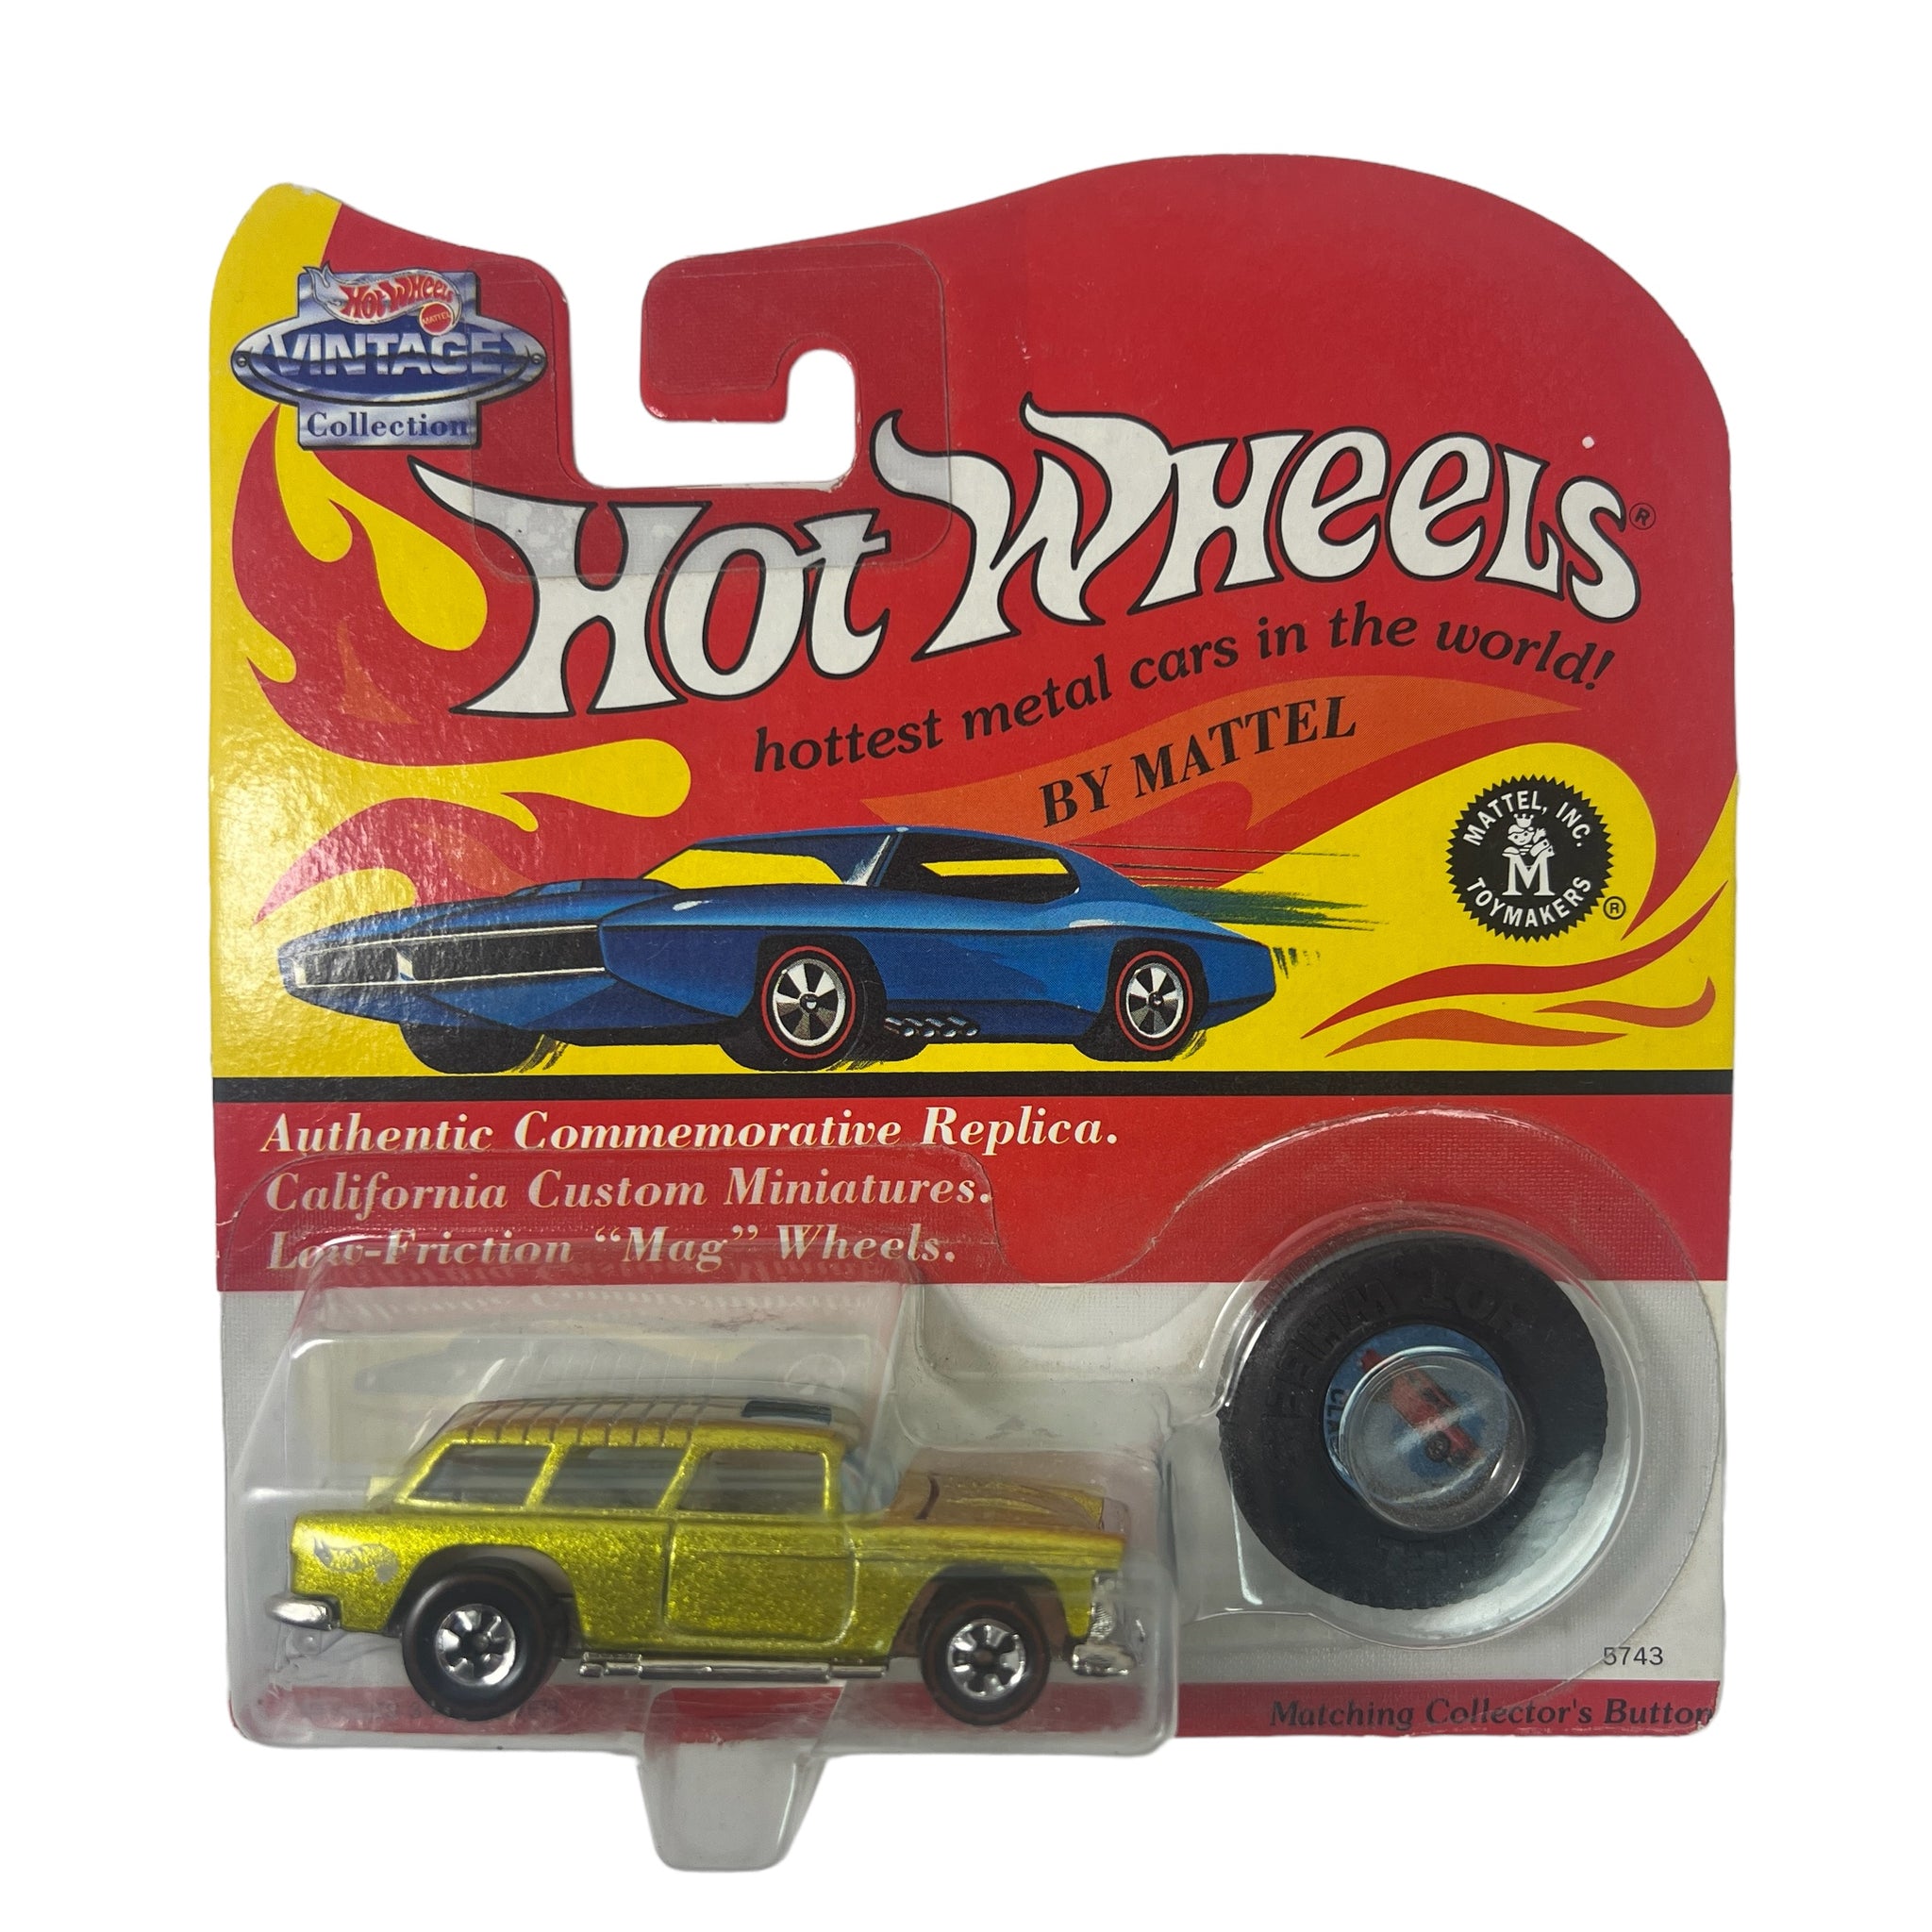 Hot Wheels ~ Authentic Commemorative Replica ~ Classic Nomad